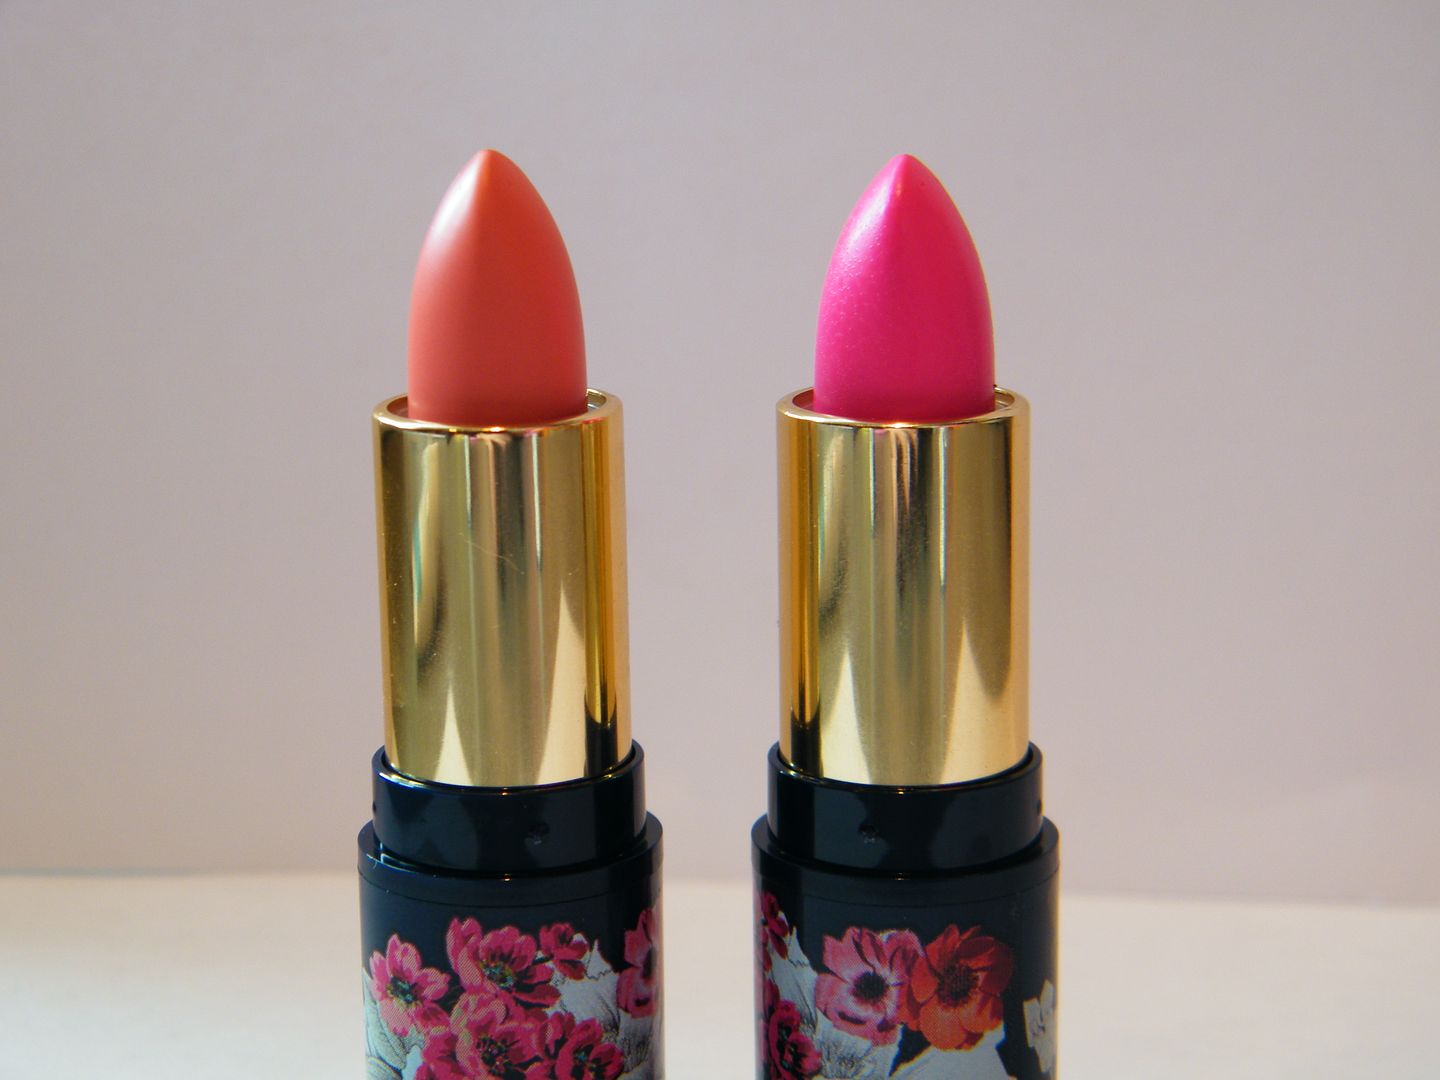 Accessorize Lipsticks in Lovestruck and Smitten